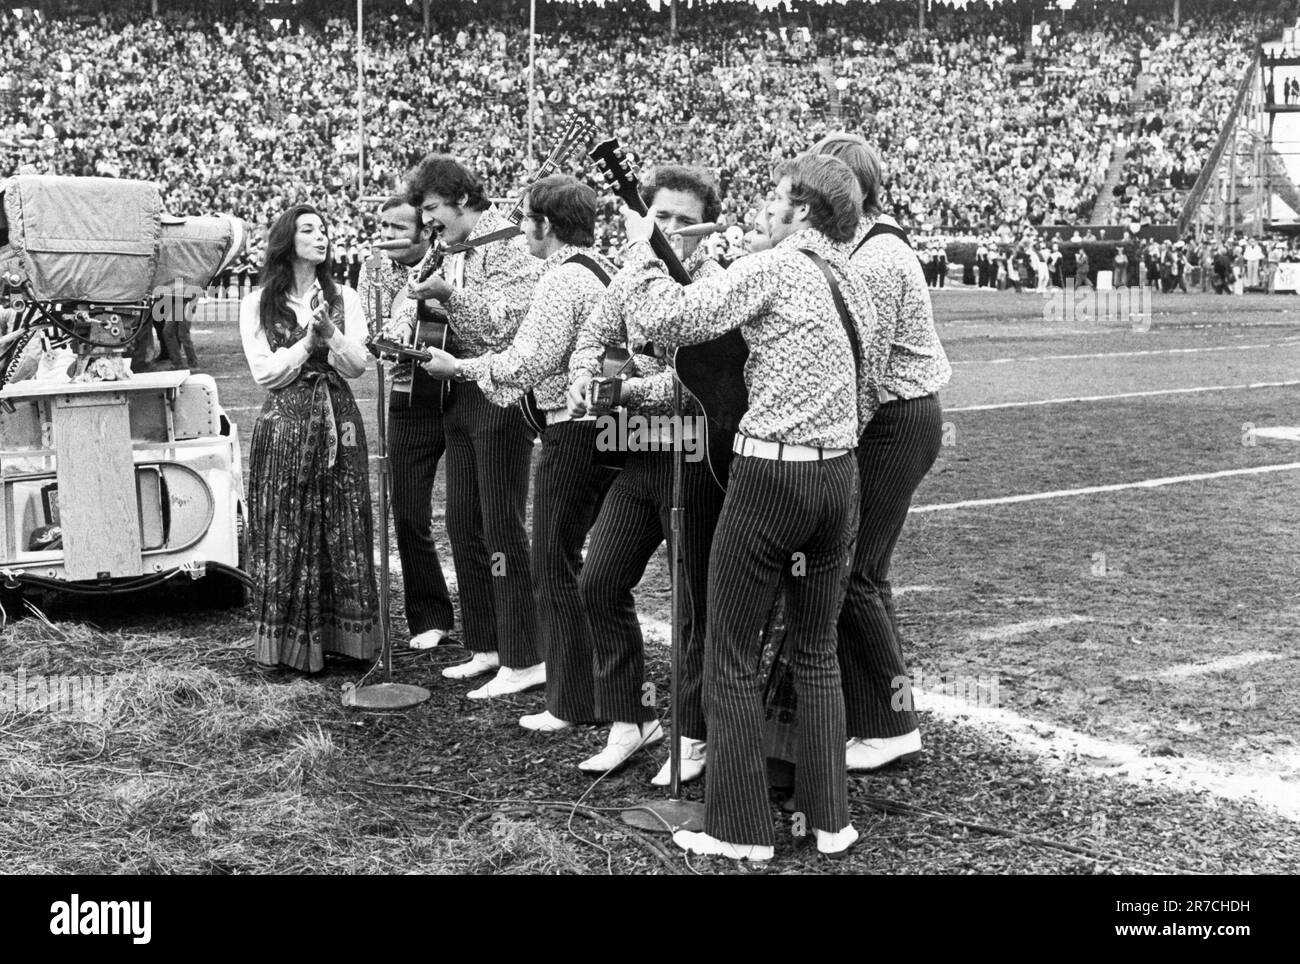 New Orleans, Louisiana: 11. Januar 1970 die Volksmusikgruppe The New Christy Minstrels tritt während der Halbzeit im Tulane Stadium auf dem Super Bowl IV in New Orleans auf. Sie wurden als "junge Amerikaner, die demonstrieren - mit Gitarren" vorgestellt. Stockfoto